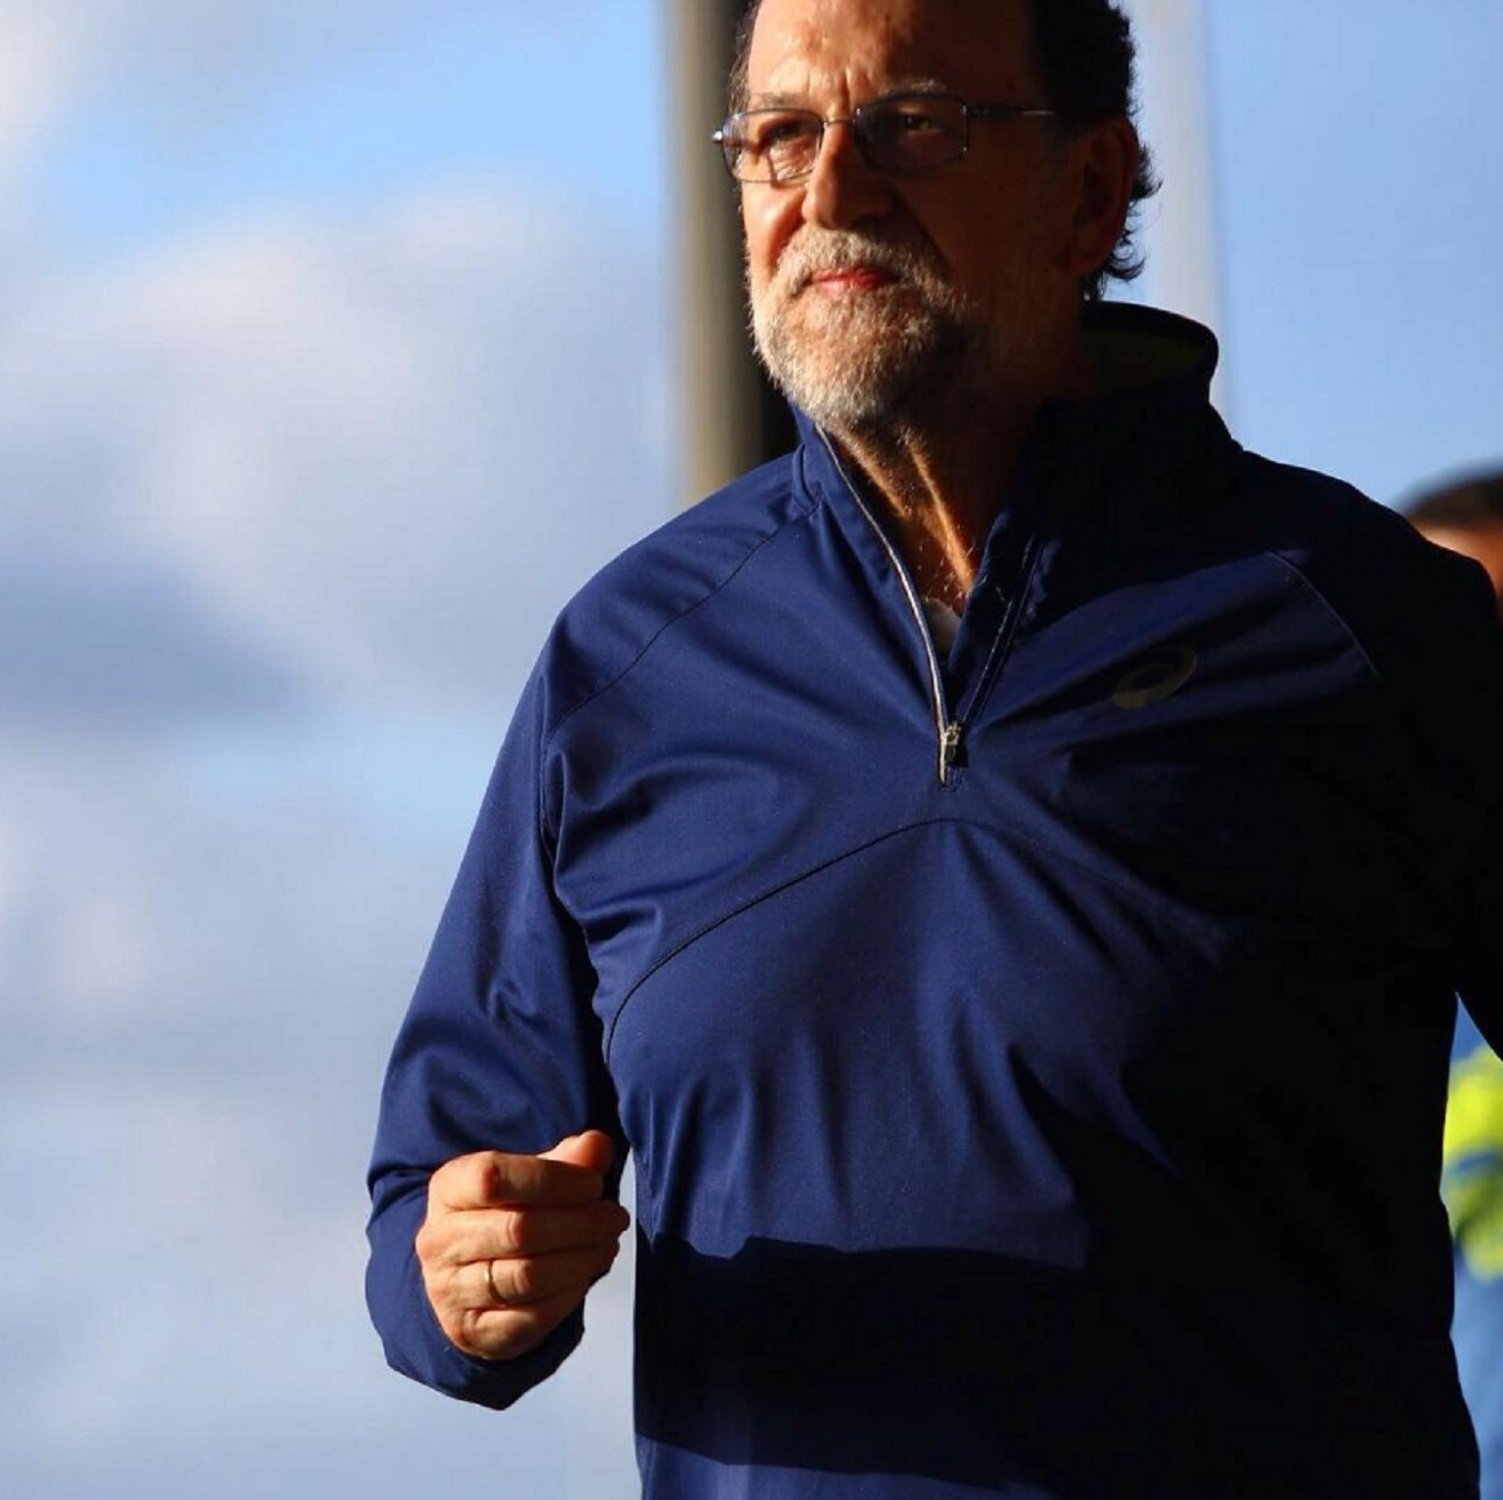 ¿Qué hace ahora Rajoy? Sorna en RAC1 al oírle: "¡Filósofo, Trankimazin, fíchalo!"